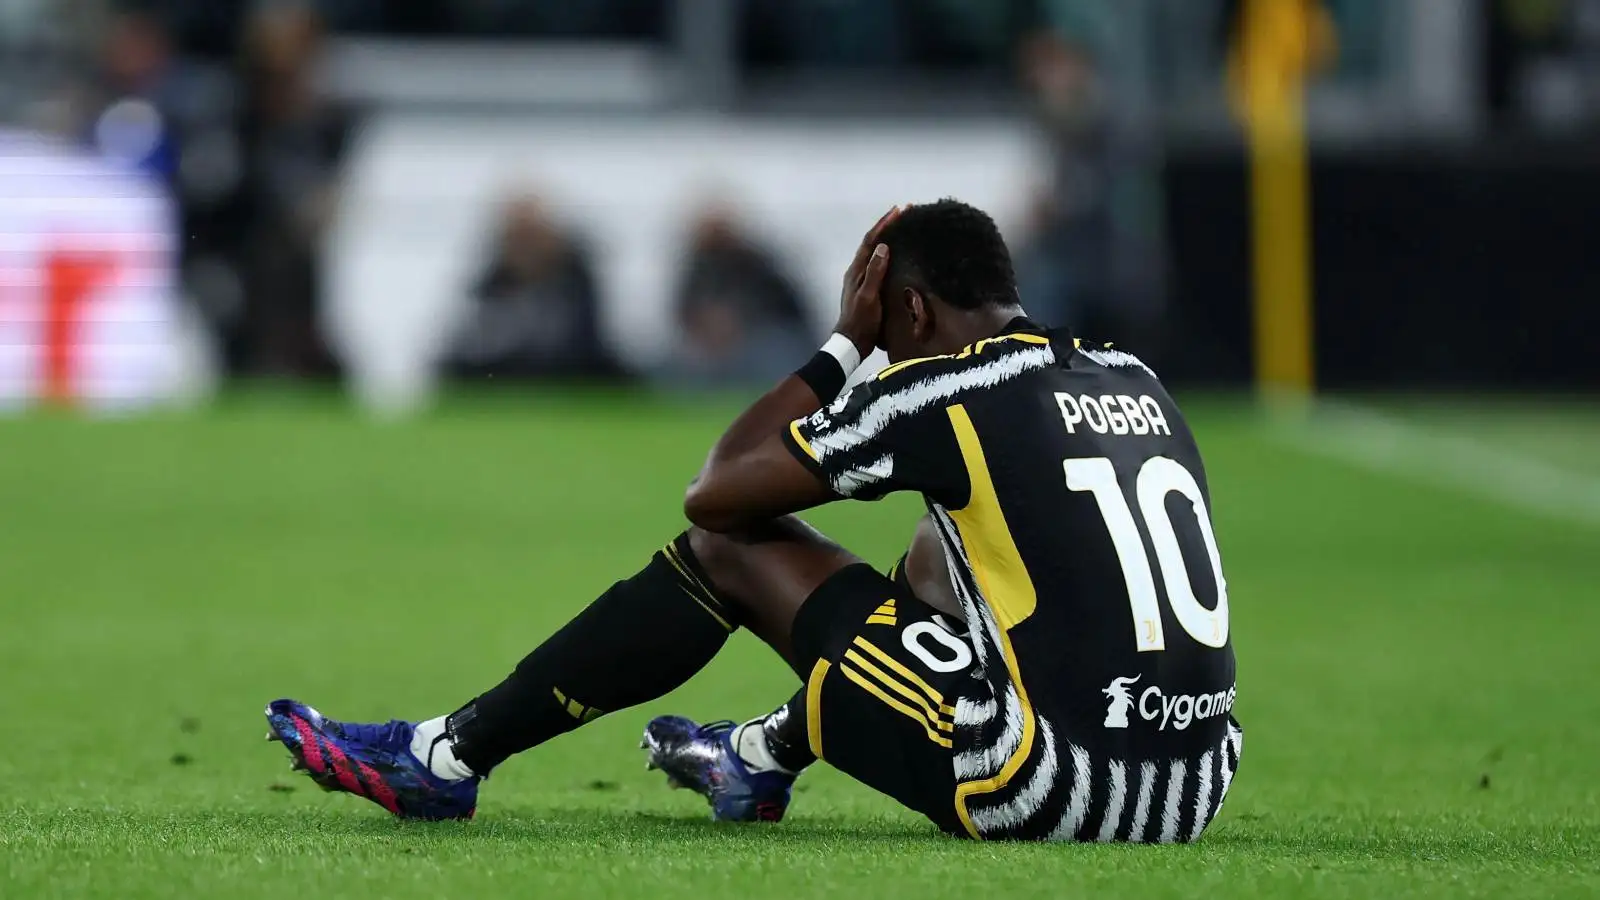 Gelandang Juventus Paul Pogba Dituntut Hukuman Empat Tahun karena Doping | BeritaNow.com